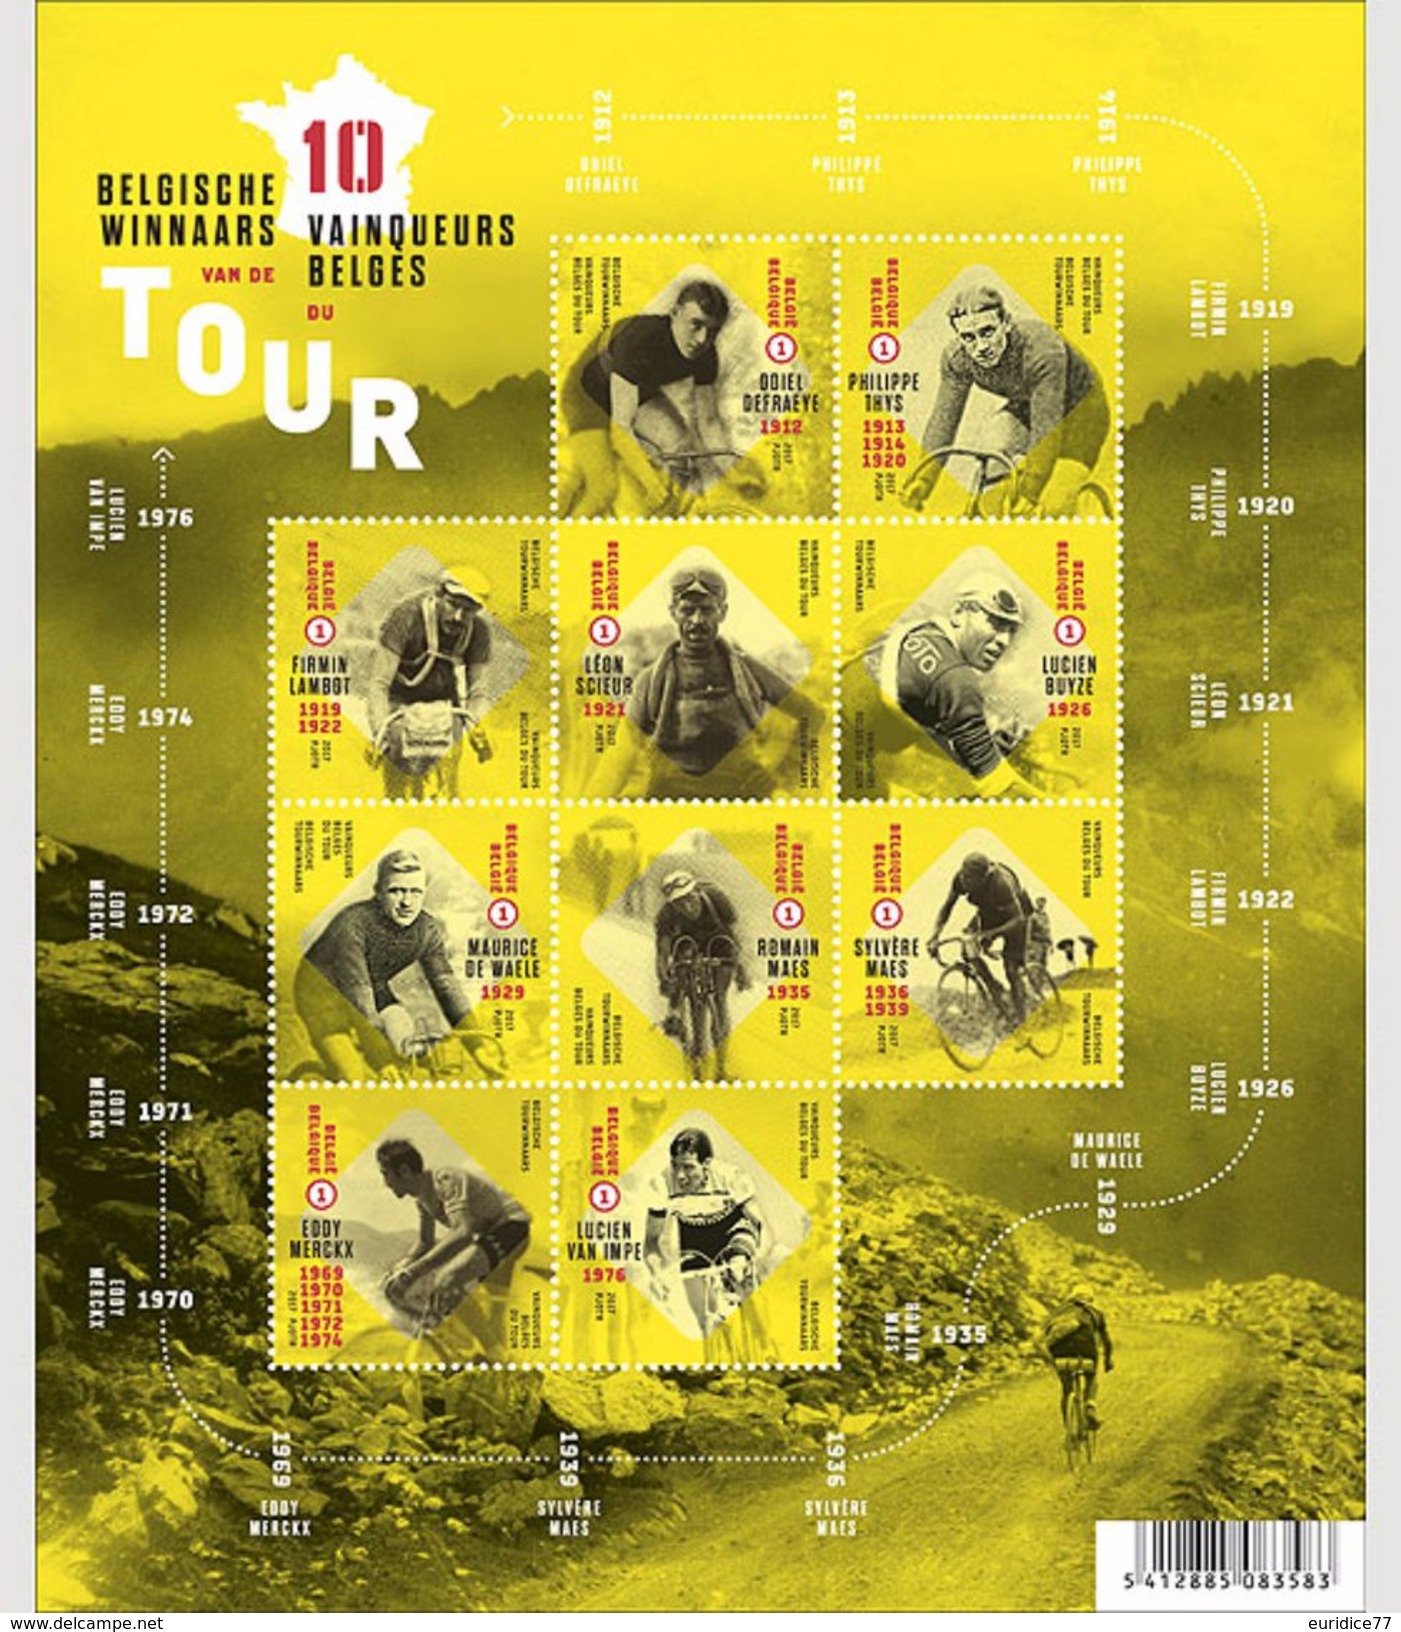 Belgium 2017 - Belgian Tour Winners Souvenir Sheet Mnh - Ongebruikt